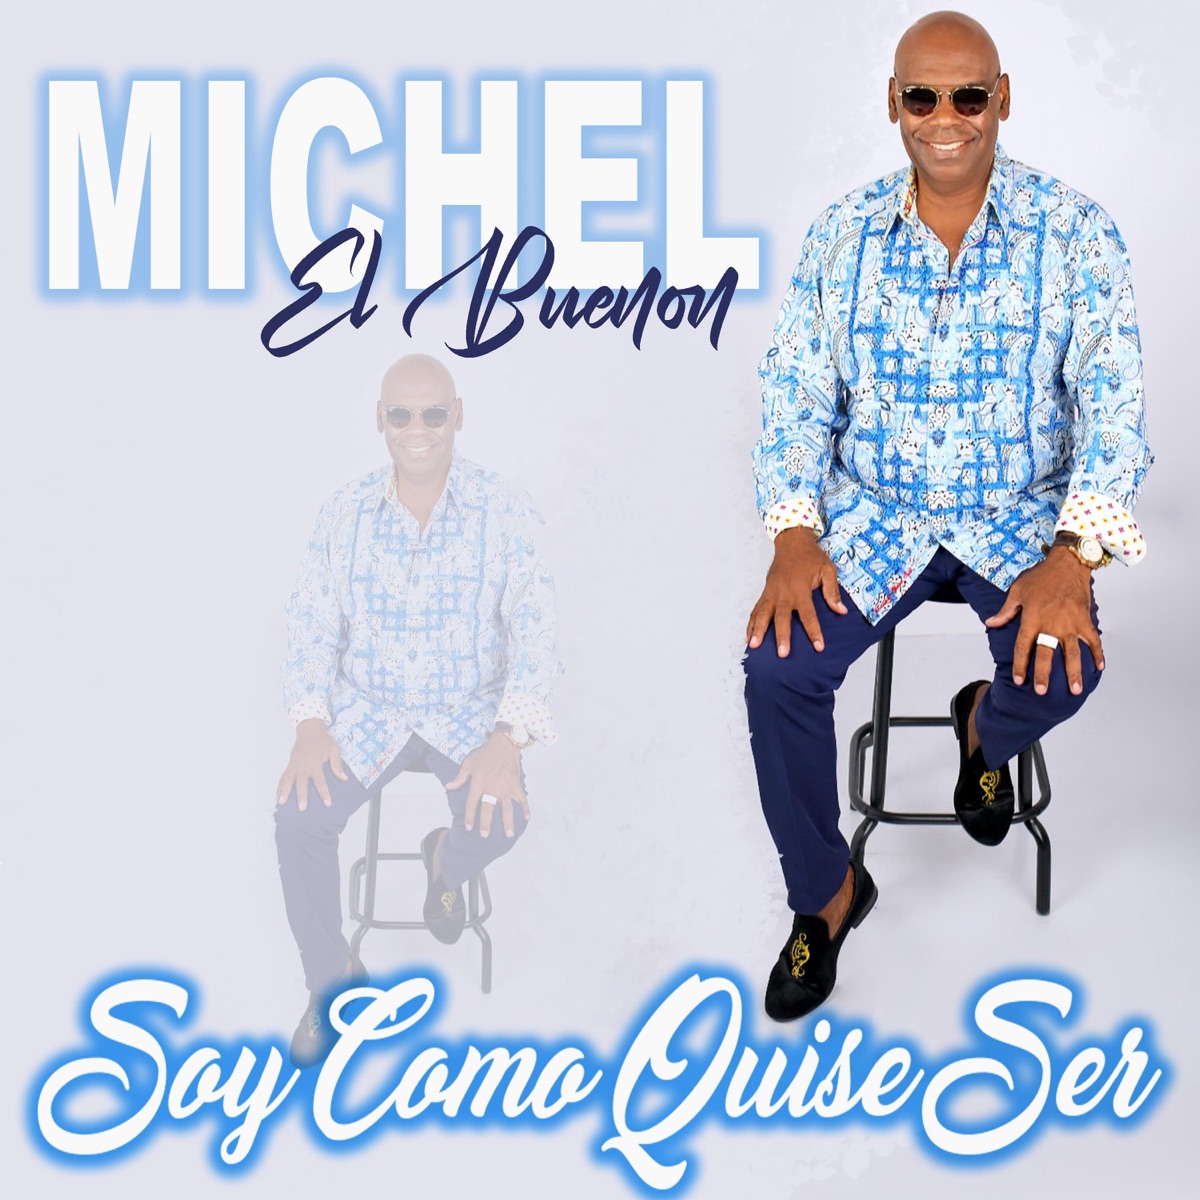 ‎Soy Como Quise Ser - Single - Album by Michel el Buenón - Apple Music